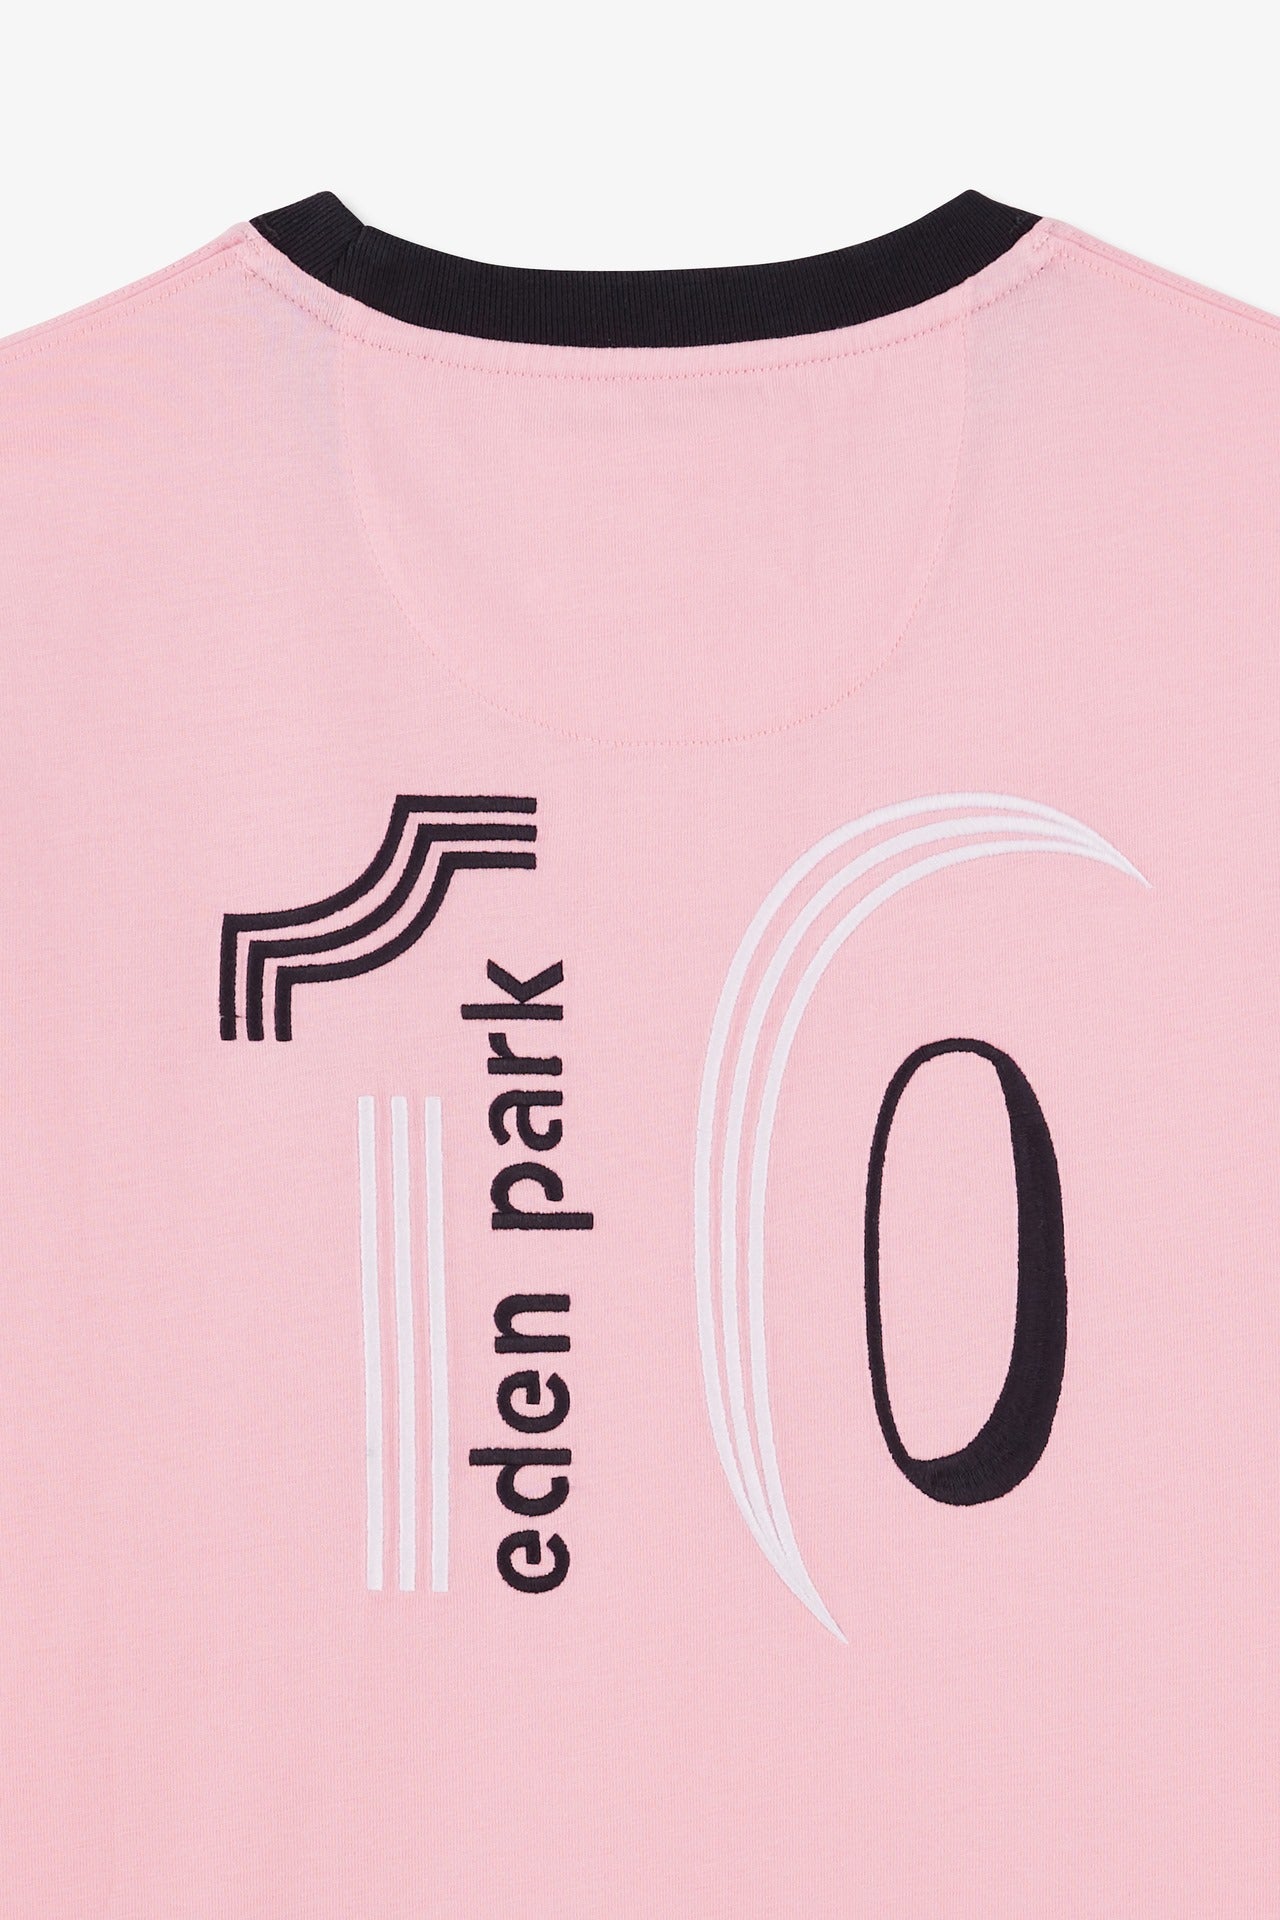 T-shirt manches courtes rose en coton broderie numéro 10